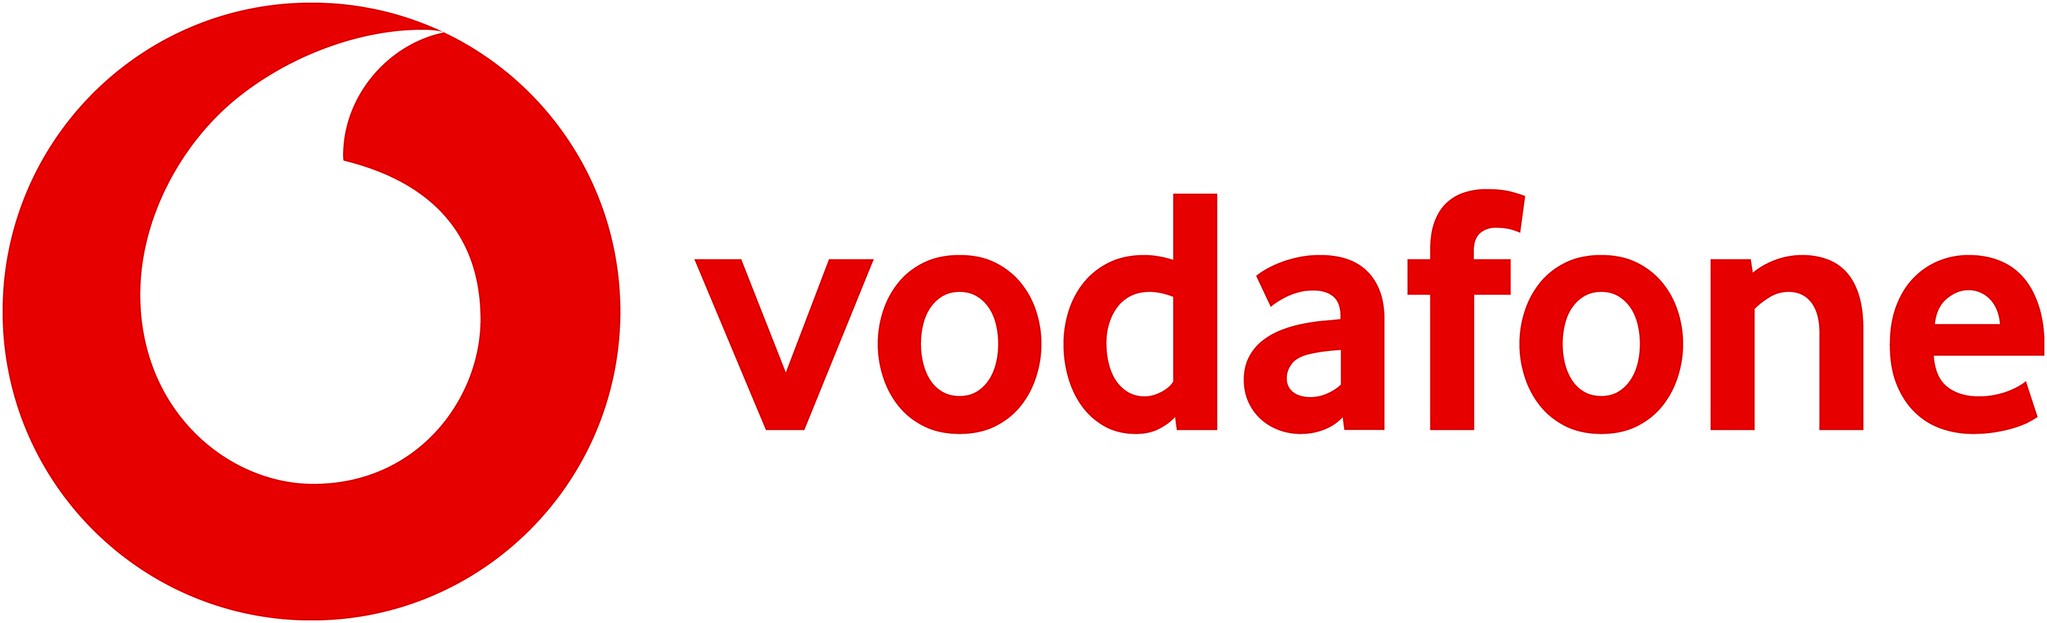 Vodafone vende su negocio español por 5.000 millones a Zigona